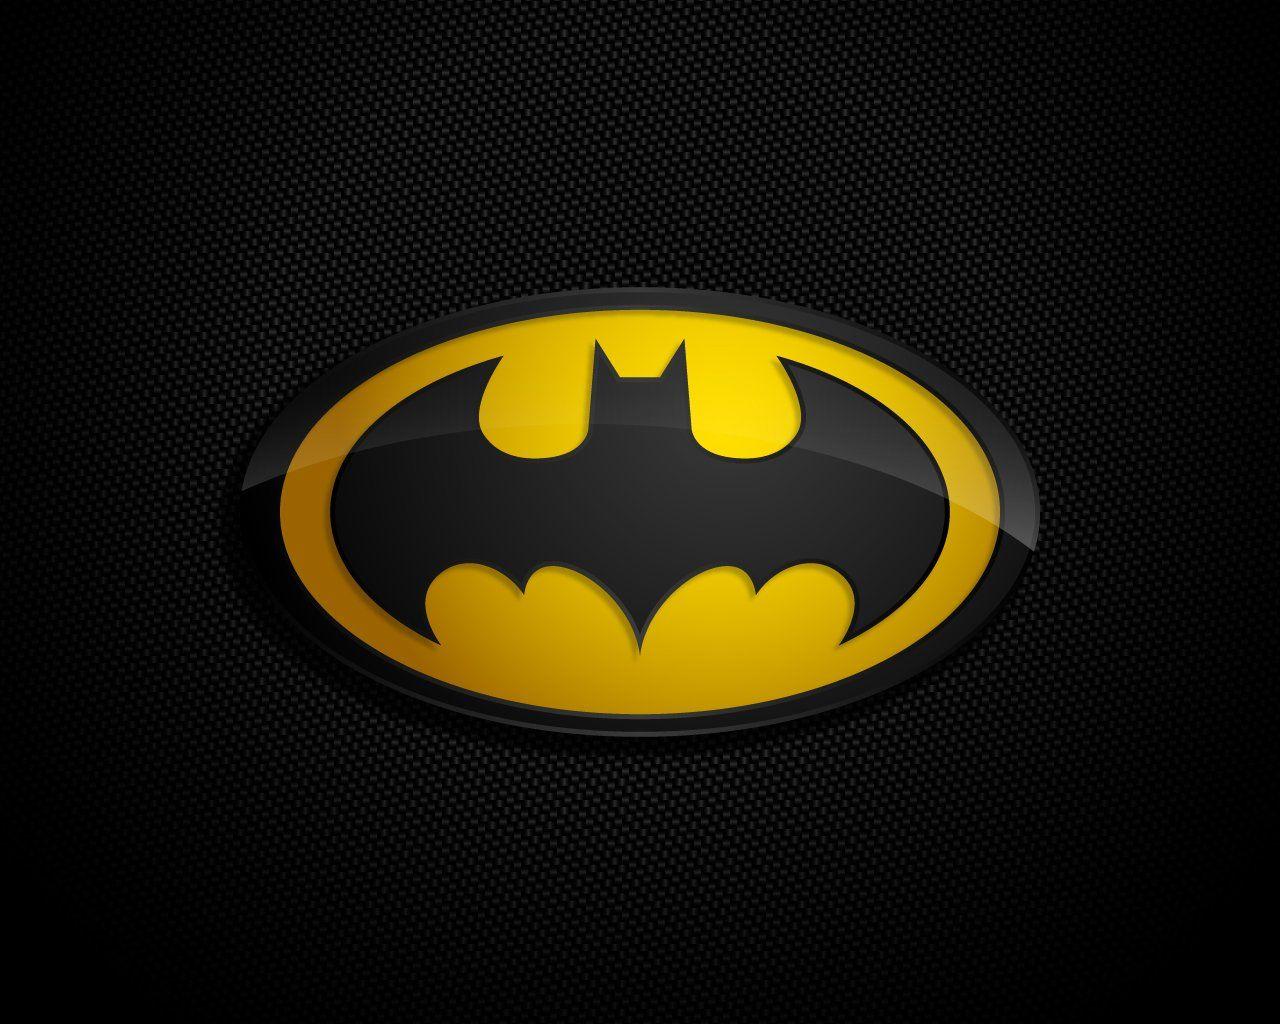 Batman Symbol Wallpaper Free Batman Symbol